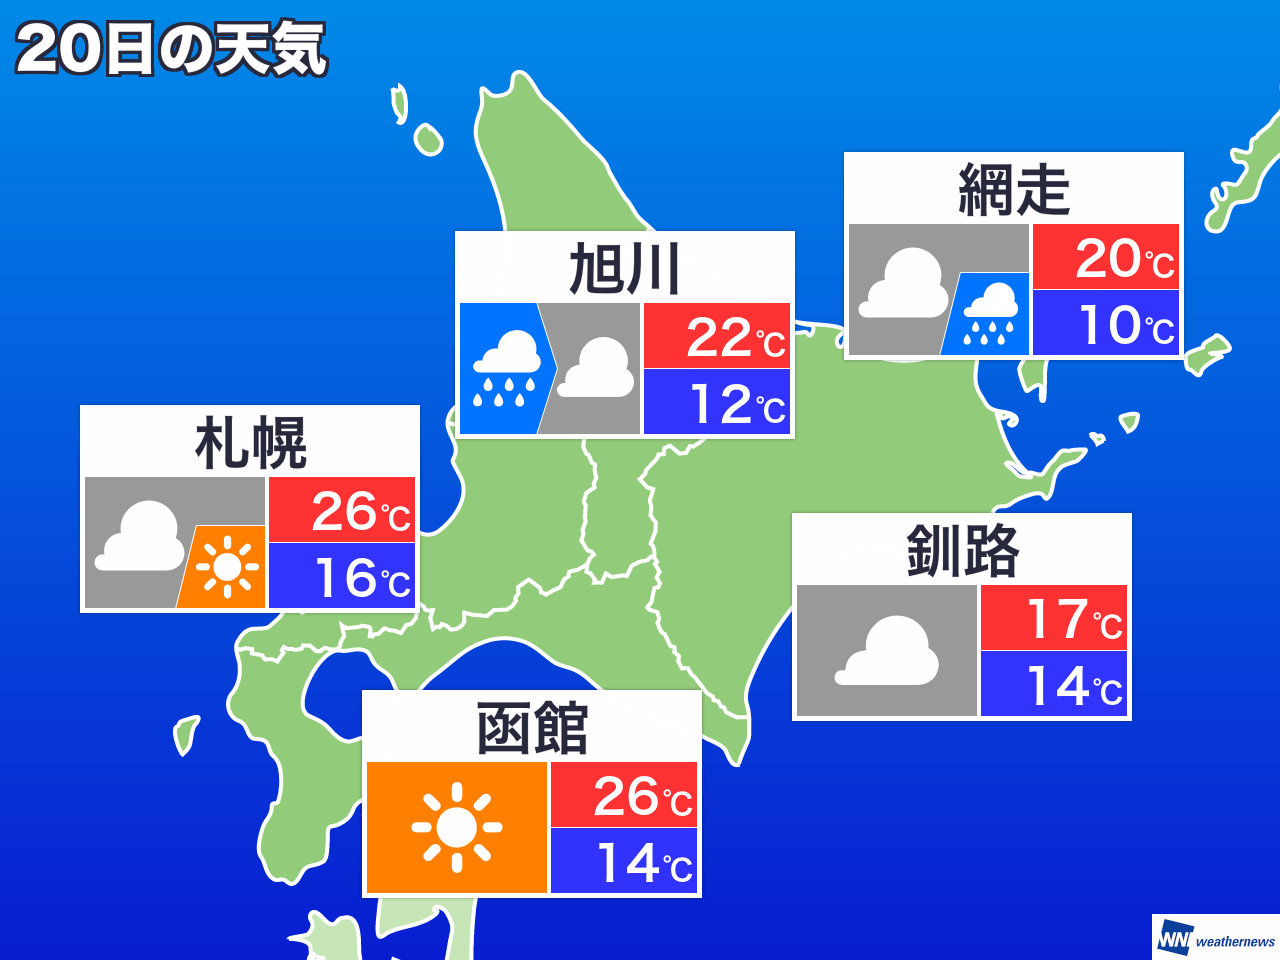 2月19日(火) 北海道の今日の天気 - ウェザーニュース